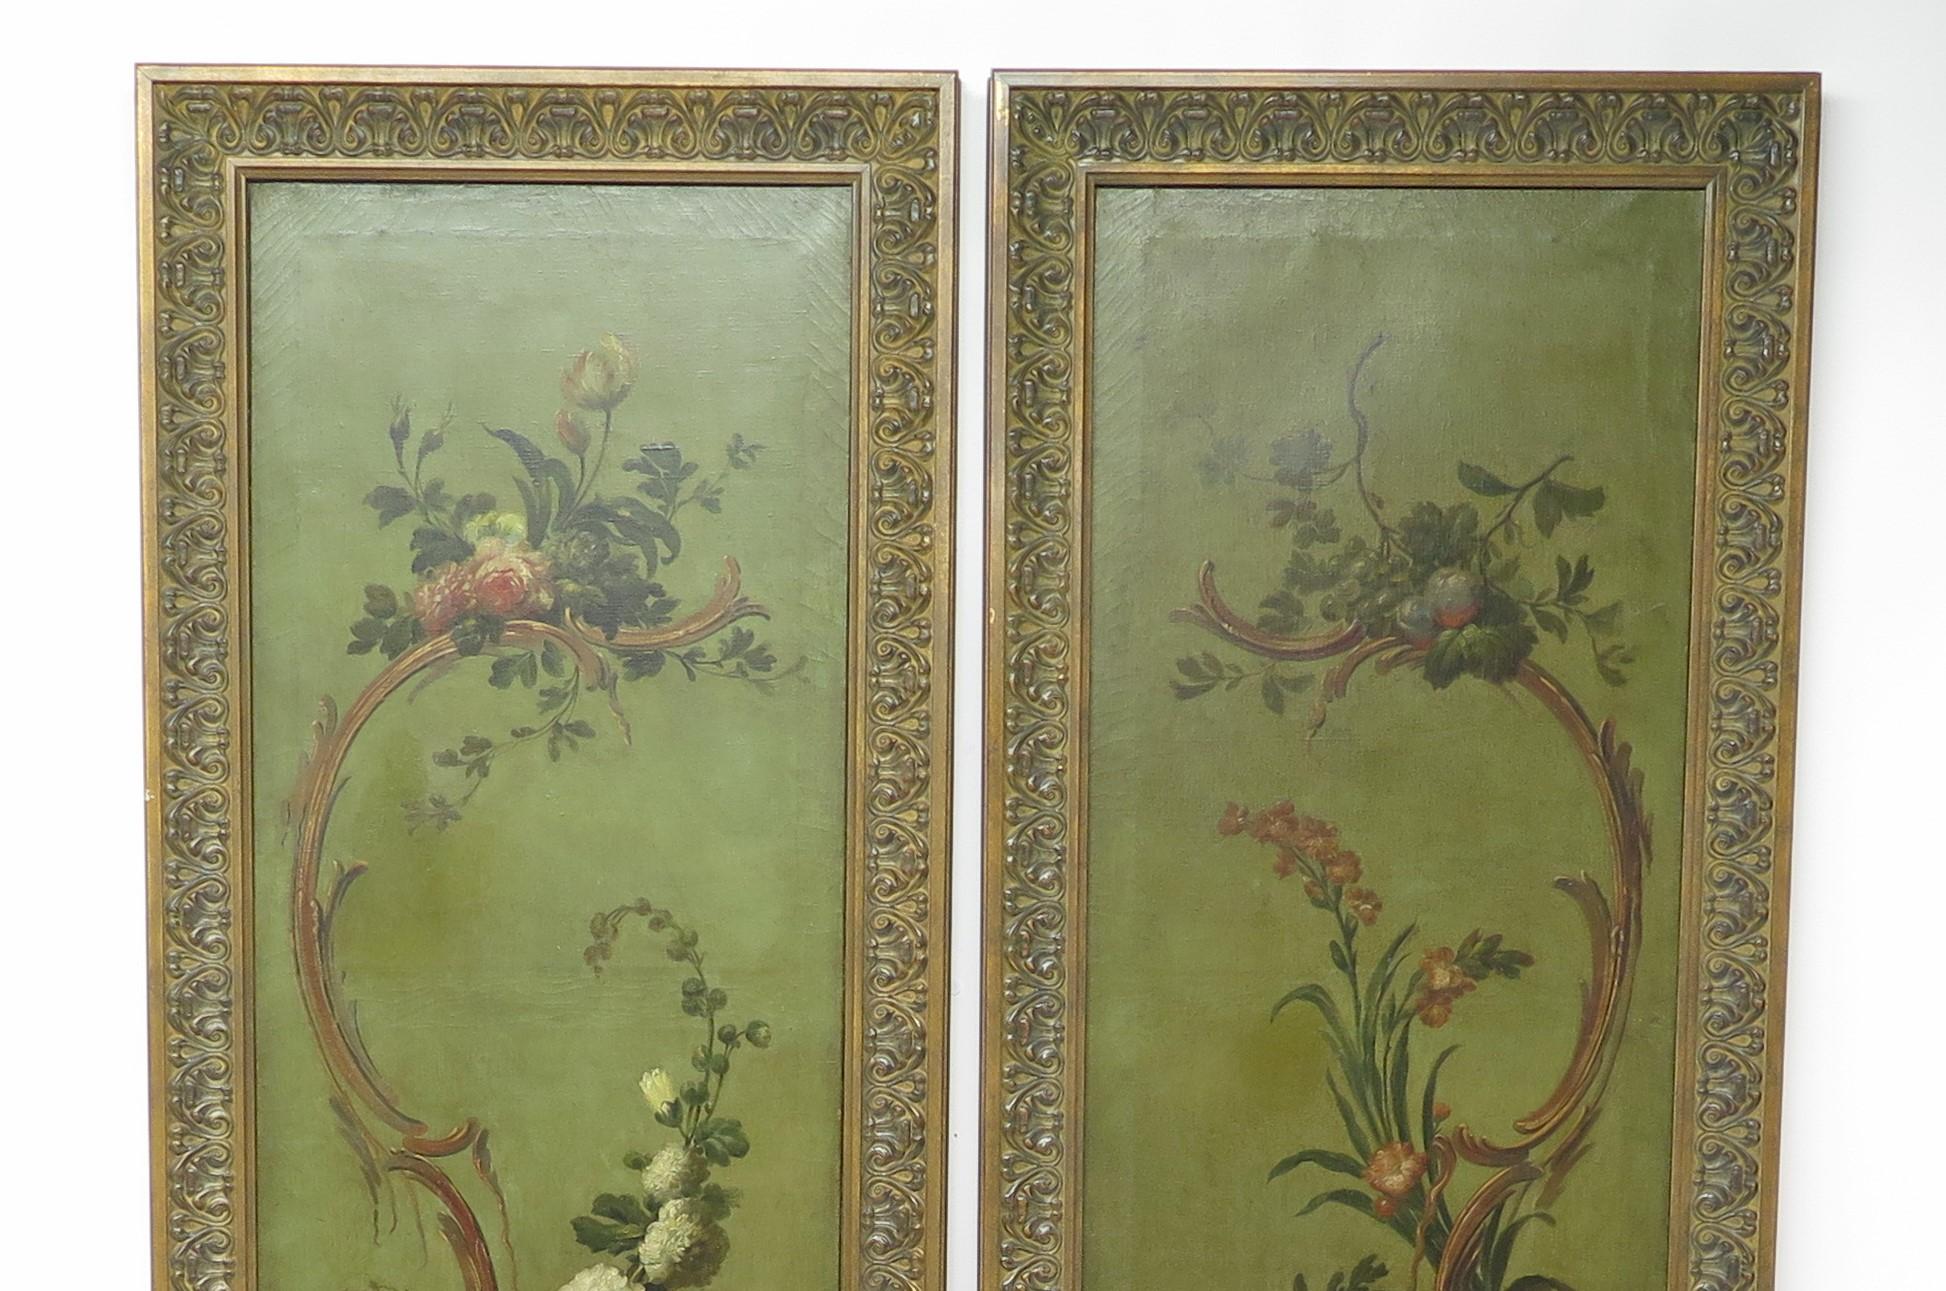 Ein Paar hohe bemalte Tafeln aus dem 19. Jahrhundert, Öl auf Leinwand, fein gemalt mit Blumen, Blattwerk und Scolly, gerahmt. Circa 1860. England.

MASSNAHMEN:

Rahmen 106